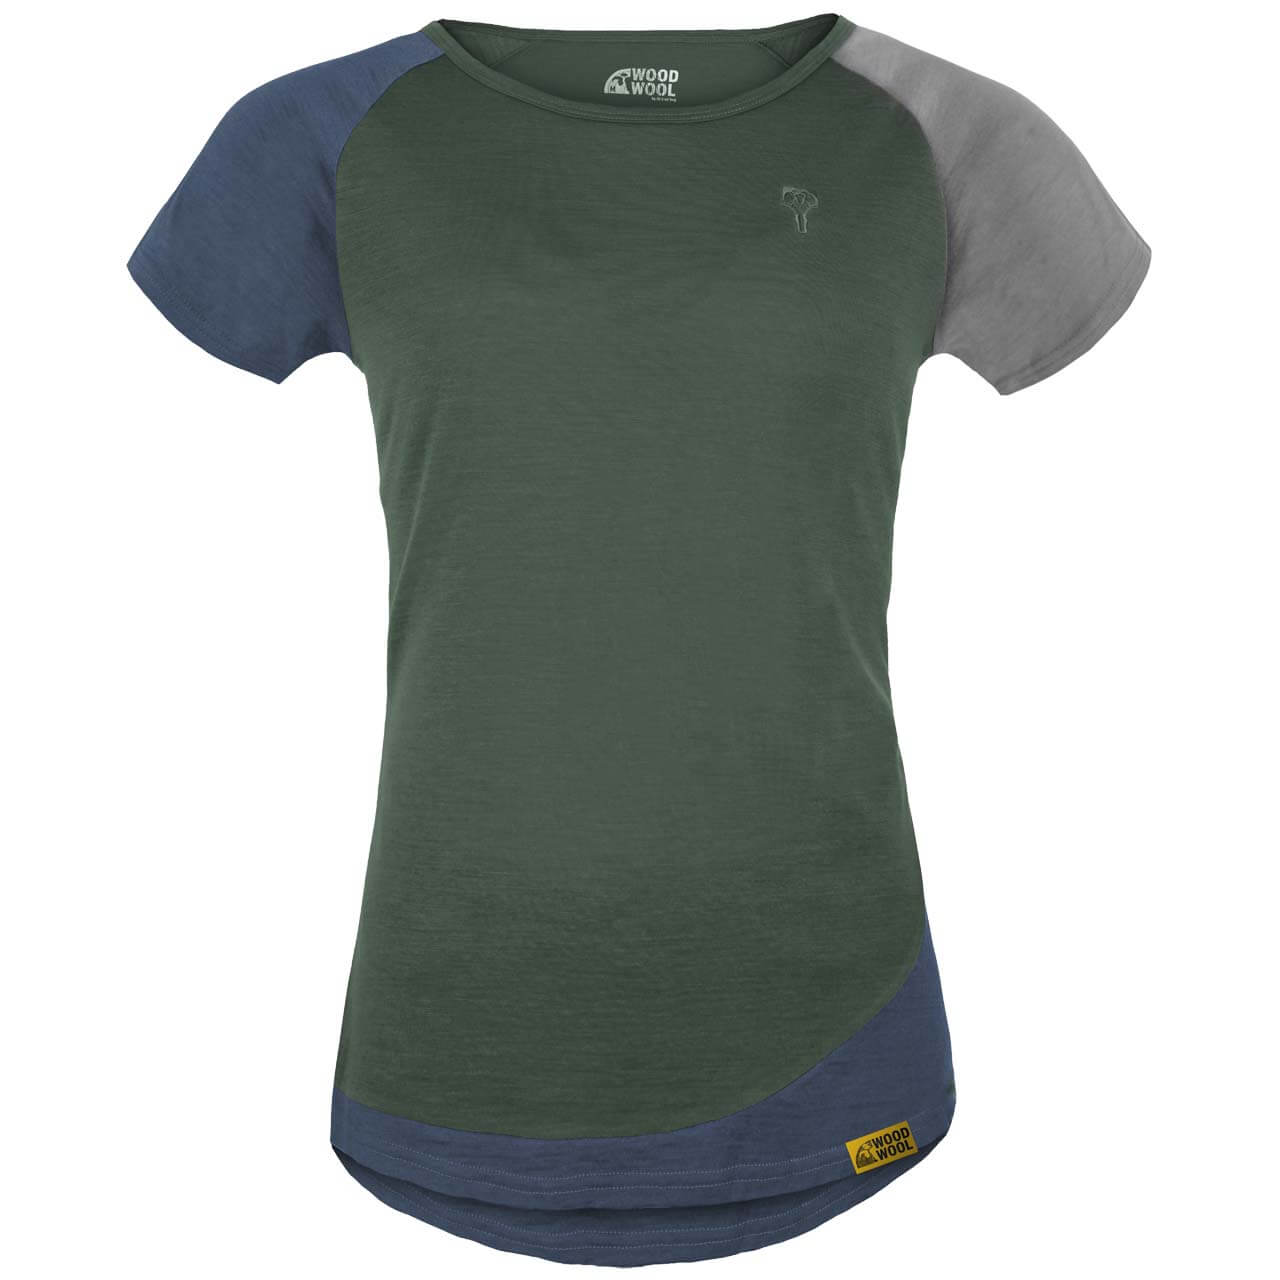 Grüezi Bag WoodWool Janeway T-Shirt - Bayberry Green, L von Grüezi Bag}